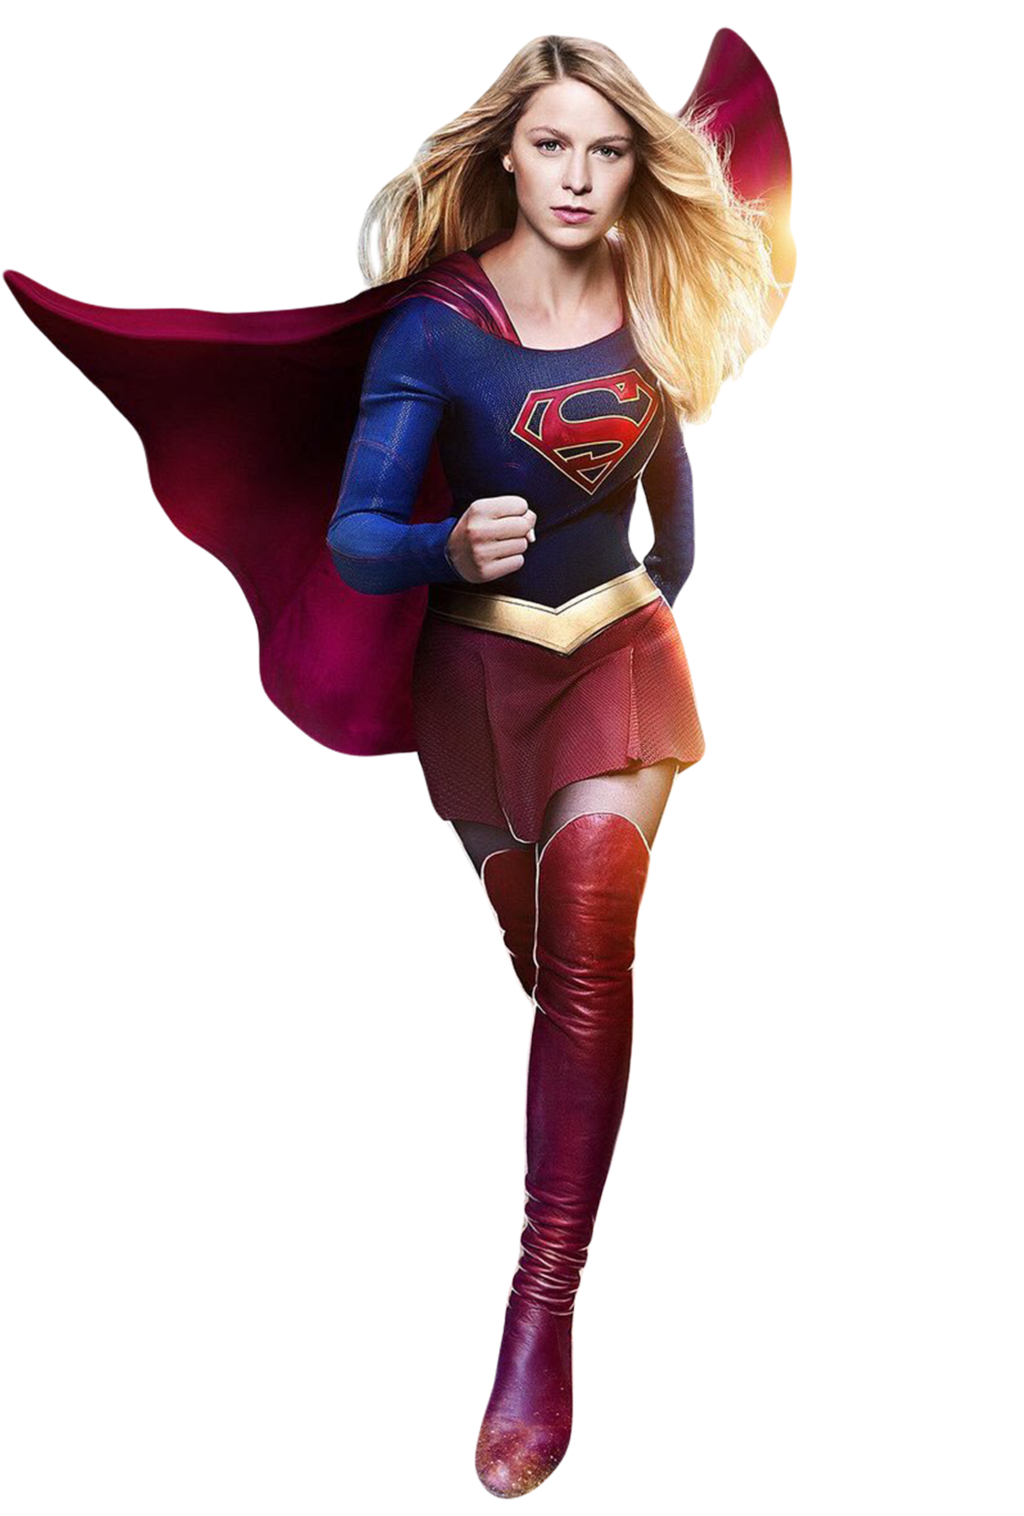 PNG File Name: Supergirl Plus